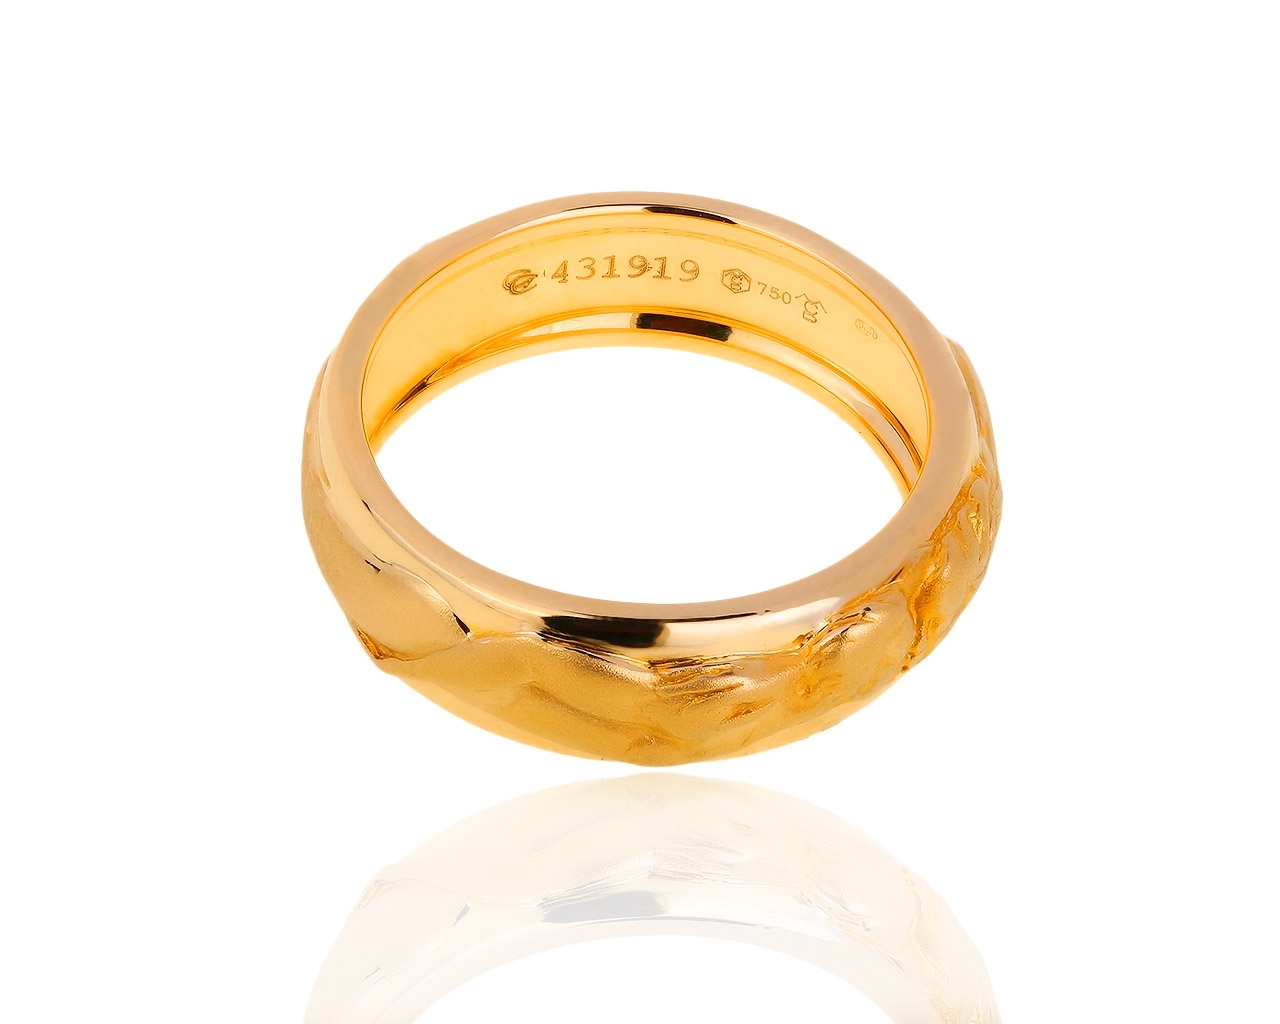 Прекрасное золотое кольцо Carrera y Carrera Promesa